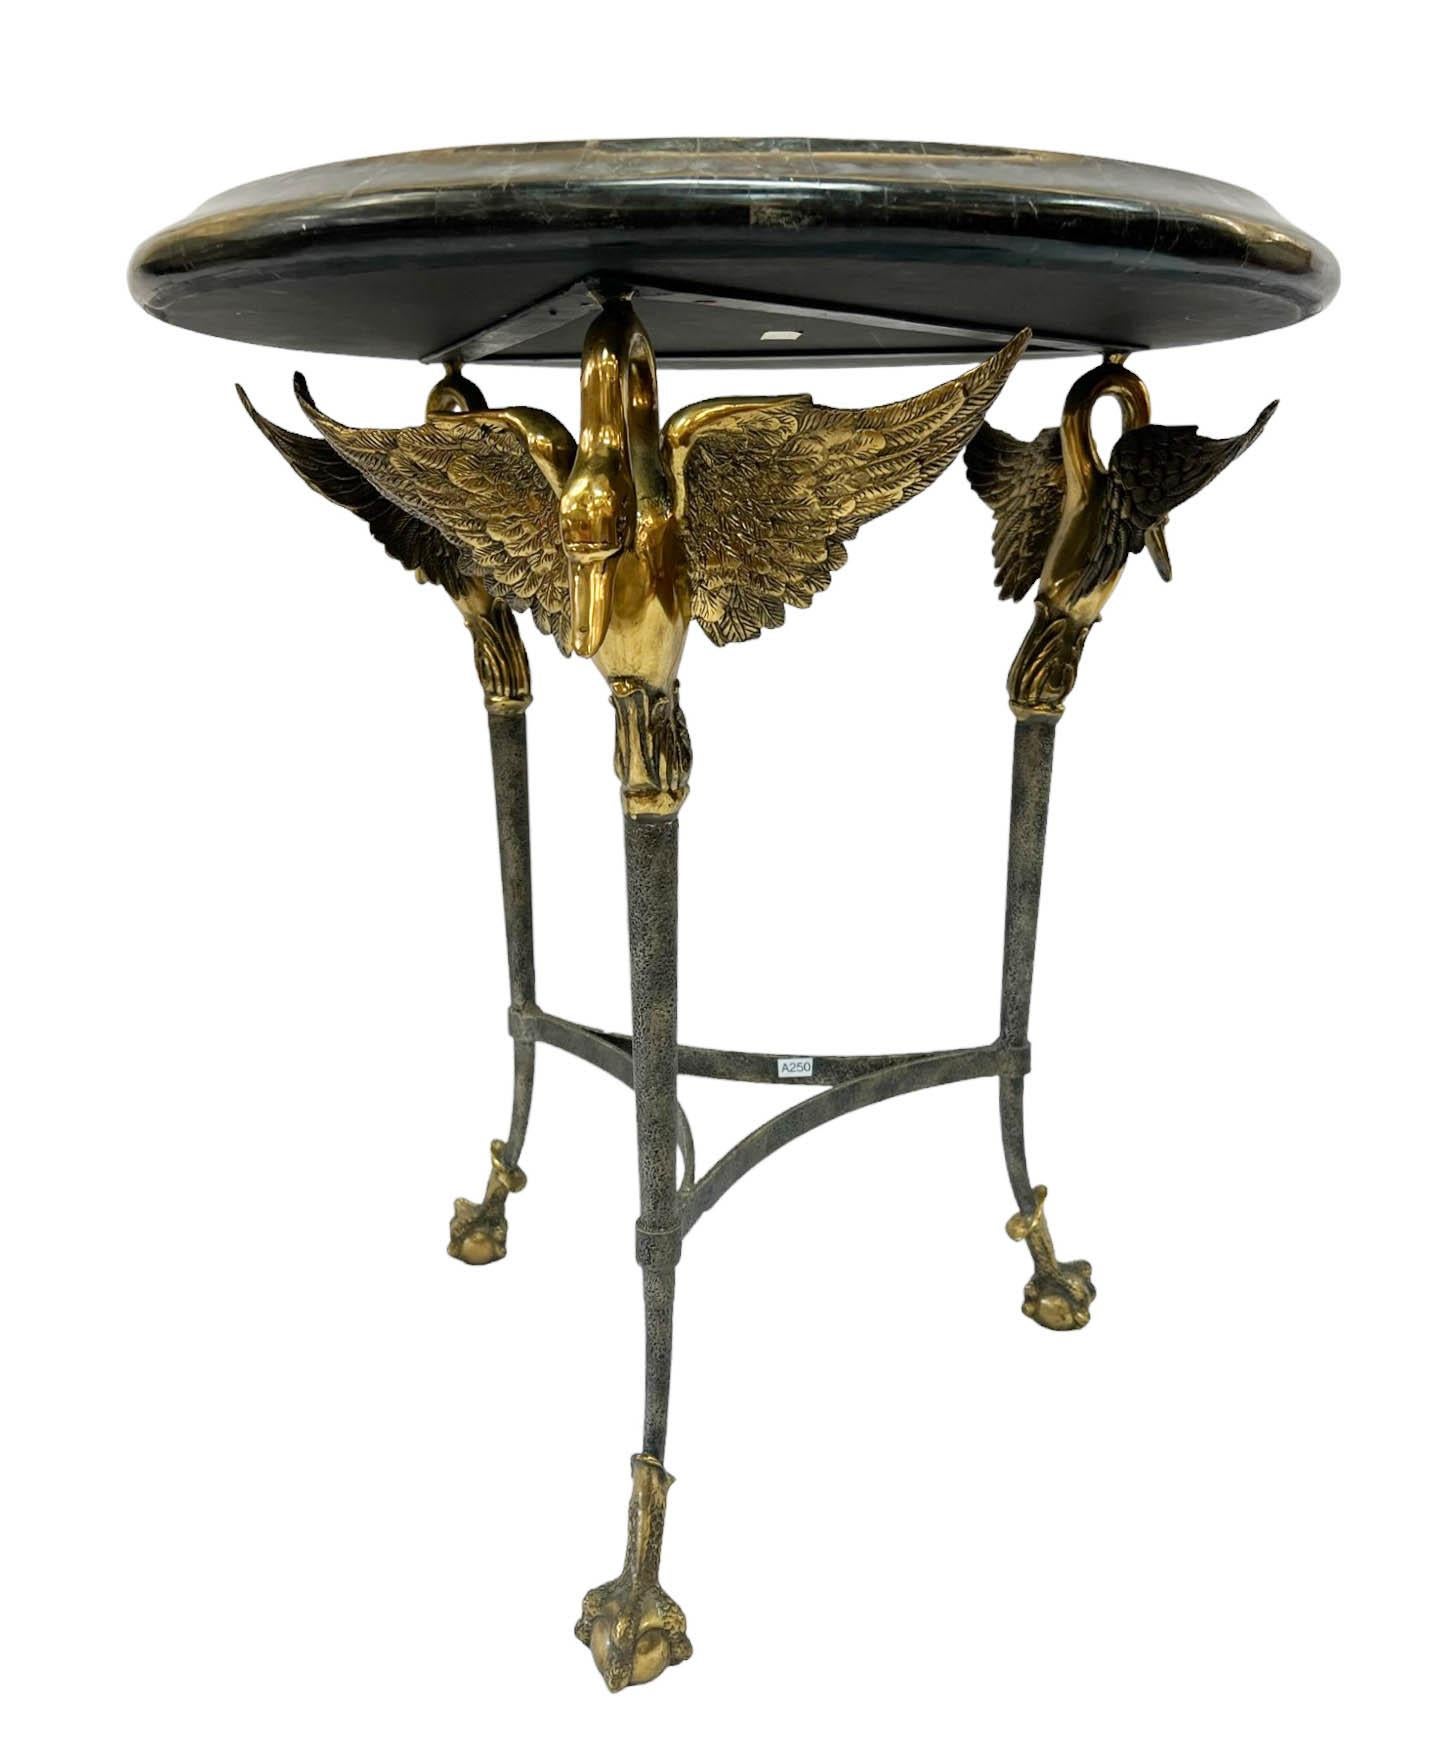 Magnifique table d'appoint de style néoclassique par Maitland Smith. La table présente un plateau en marqueterie de marbre soutenu par trois pieds en forme de cygne. Un magnifique cygne en laiton aux ailes ouvertes couronne chaque pied de table.